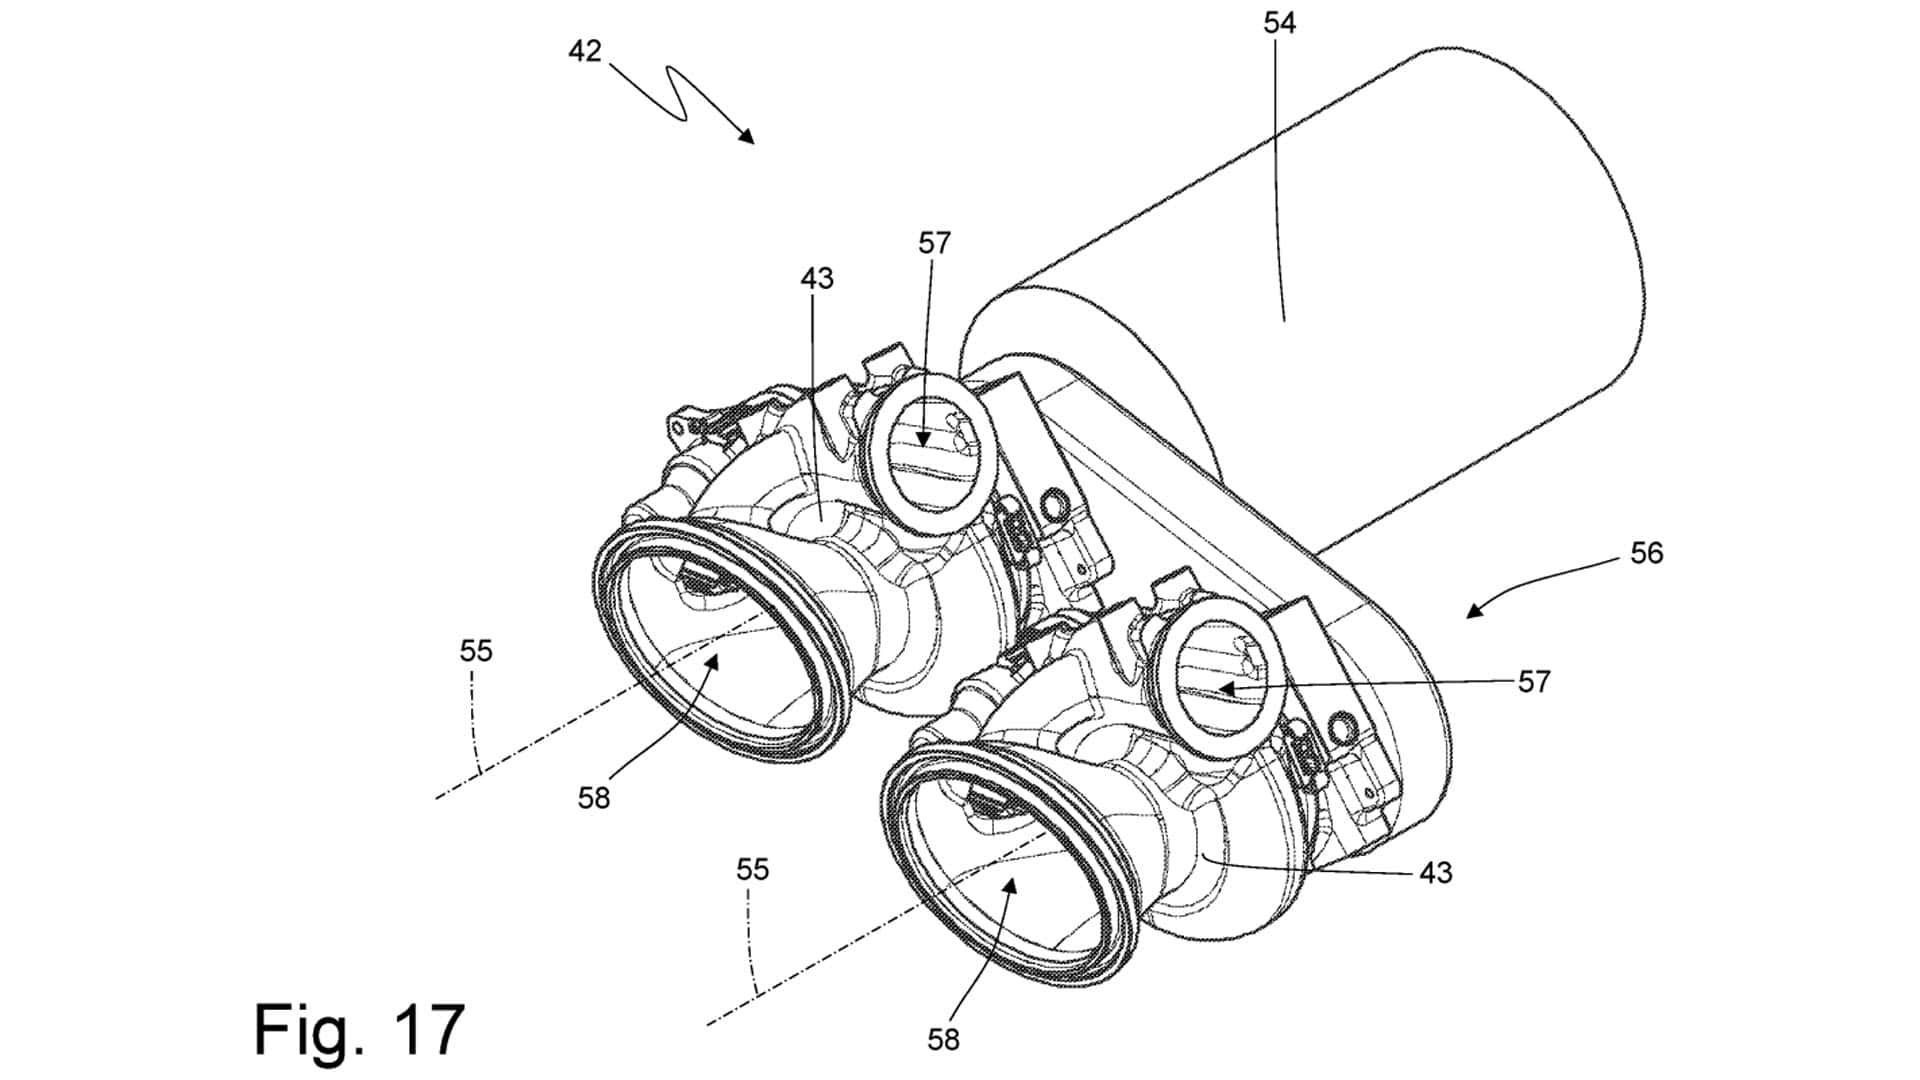 Patente de motor ferrari: turbocompressores